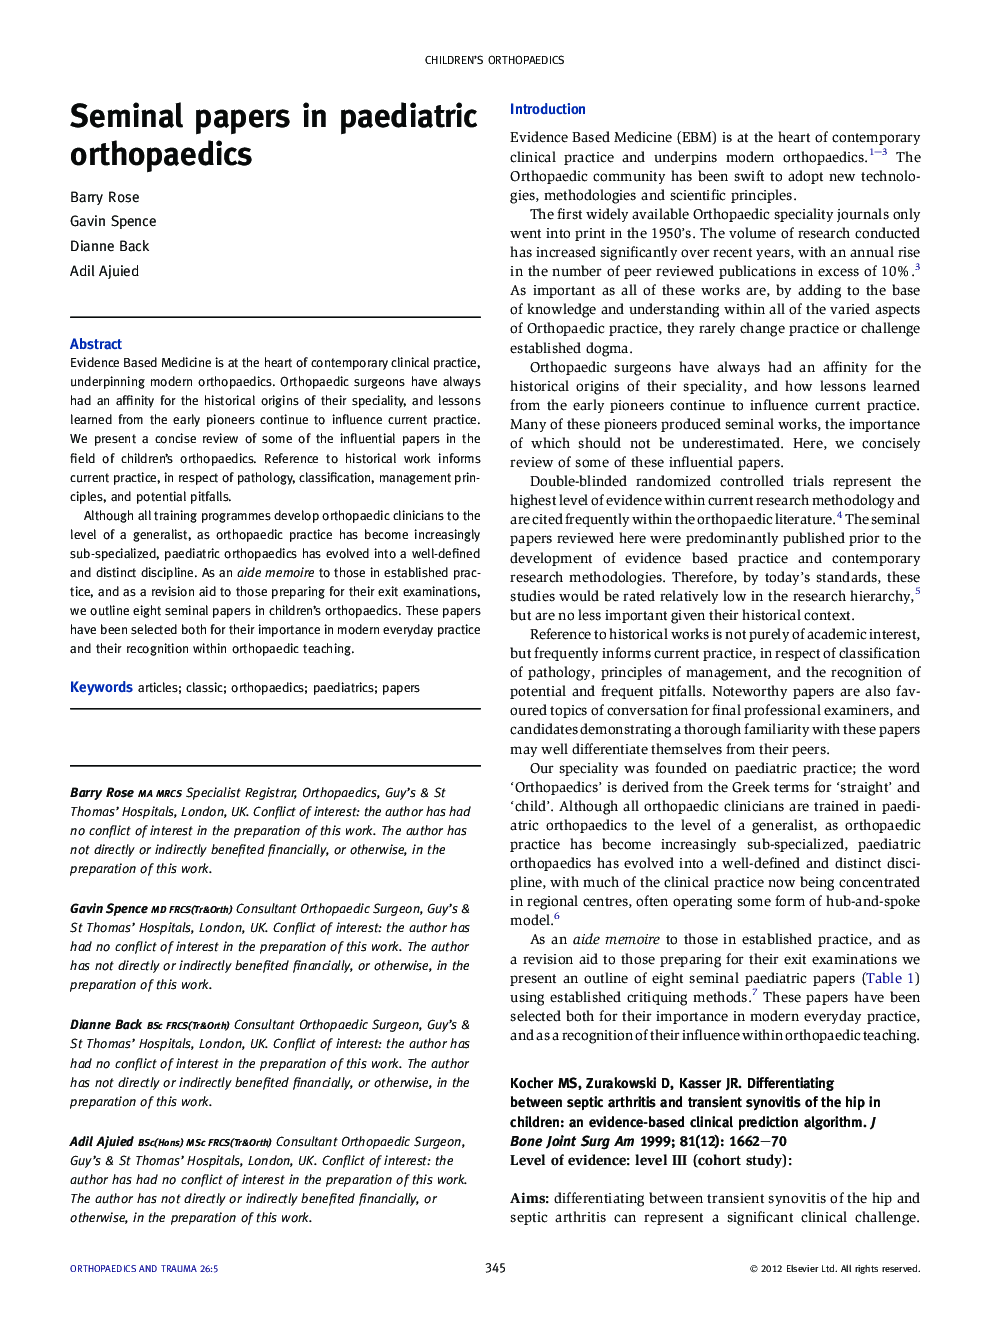 Seminal papers in paediatric orthopaedics